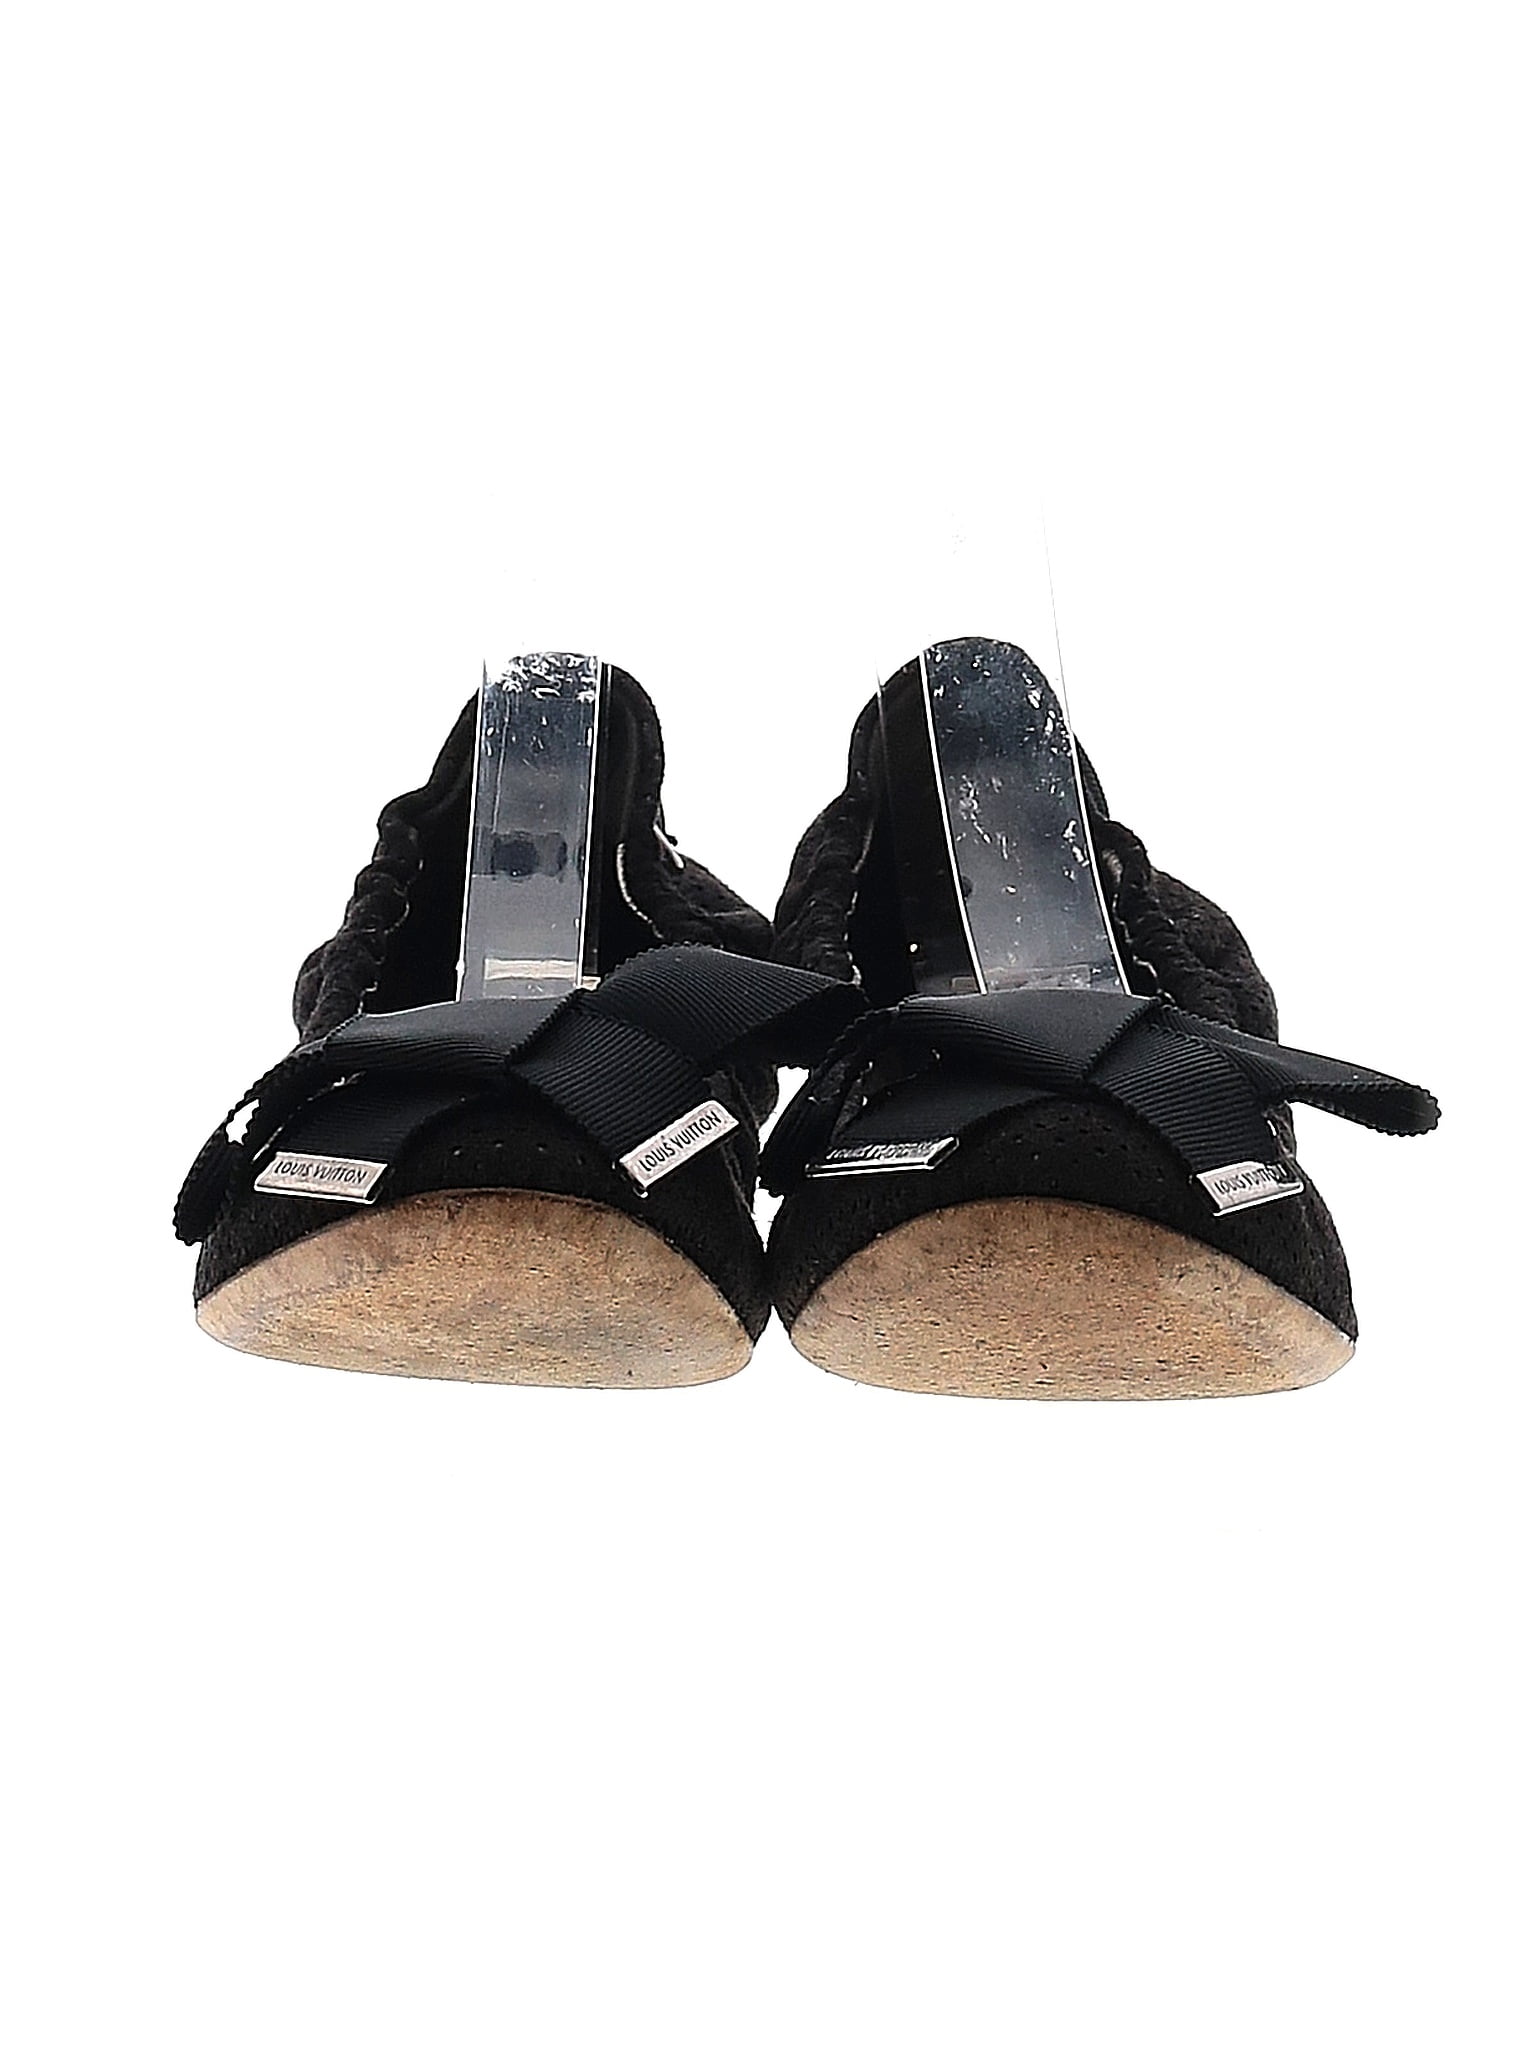 Louis Vuitton Black Patent Leather Bow Slides Sandals Size 39.5